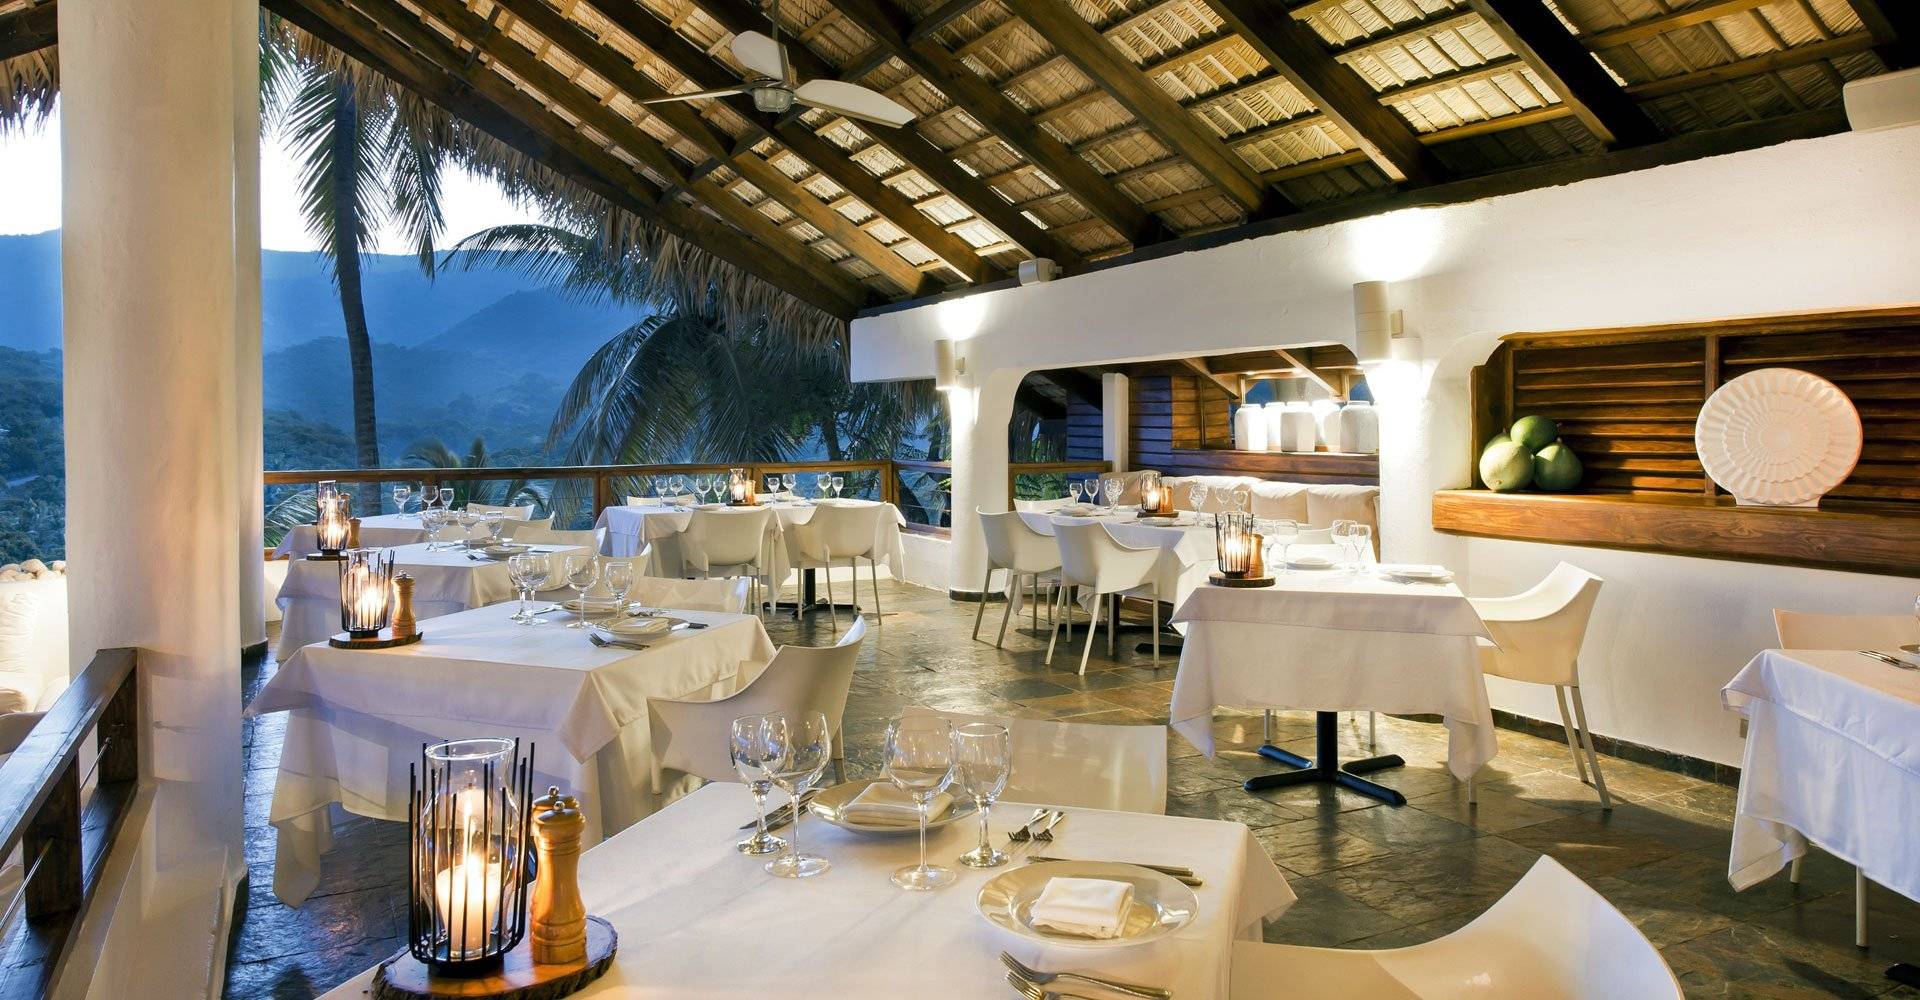 Dominikanische Republik, Casa Bonita, Restaurant, Latin America Tours